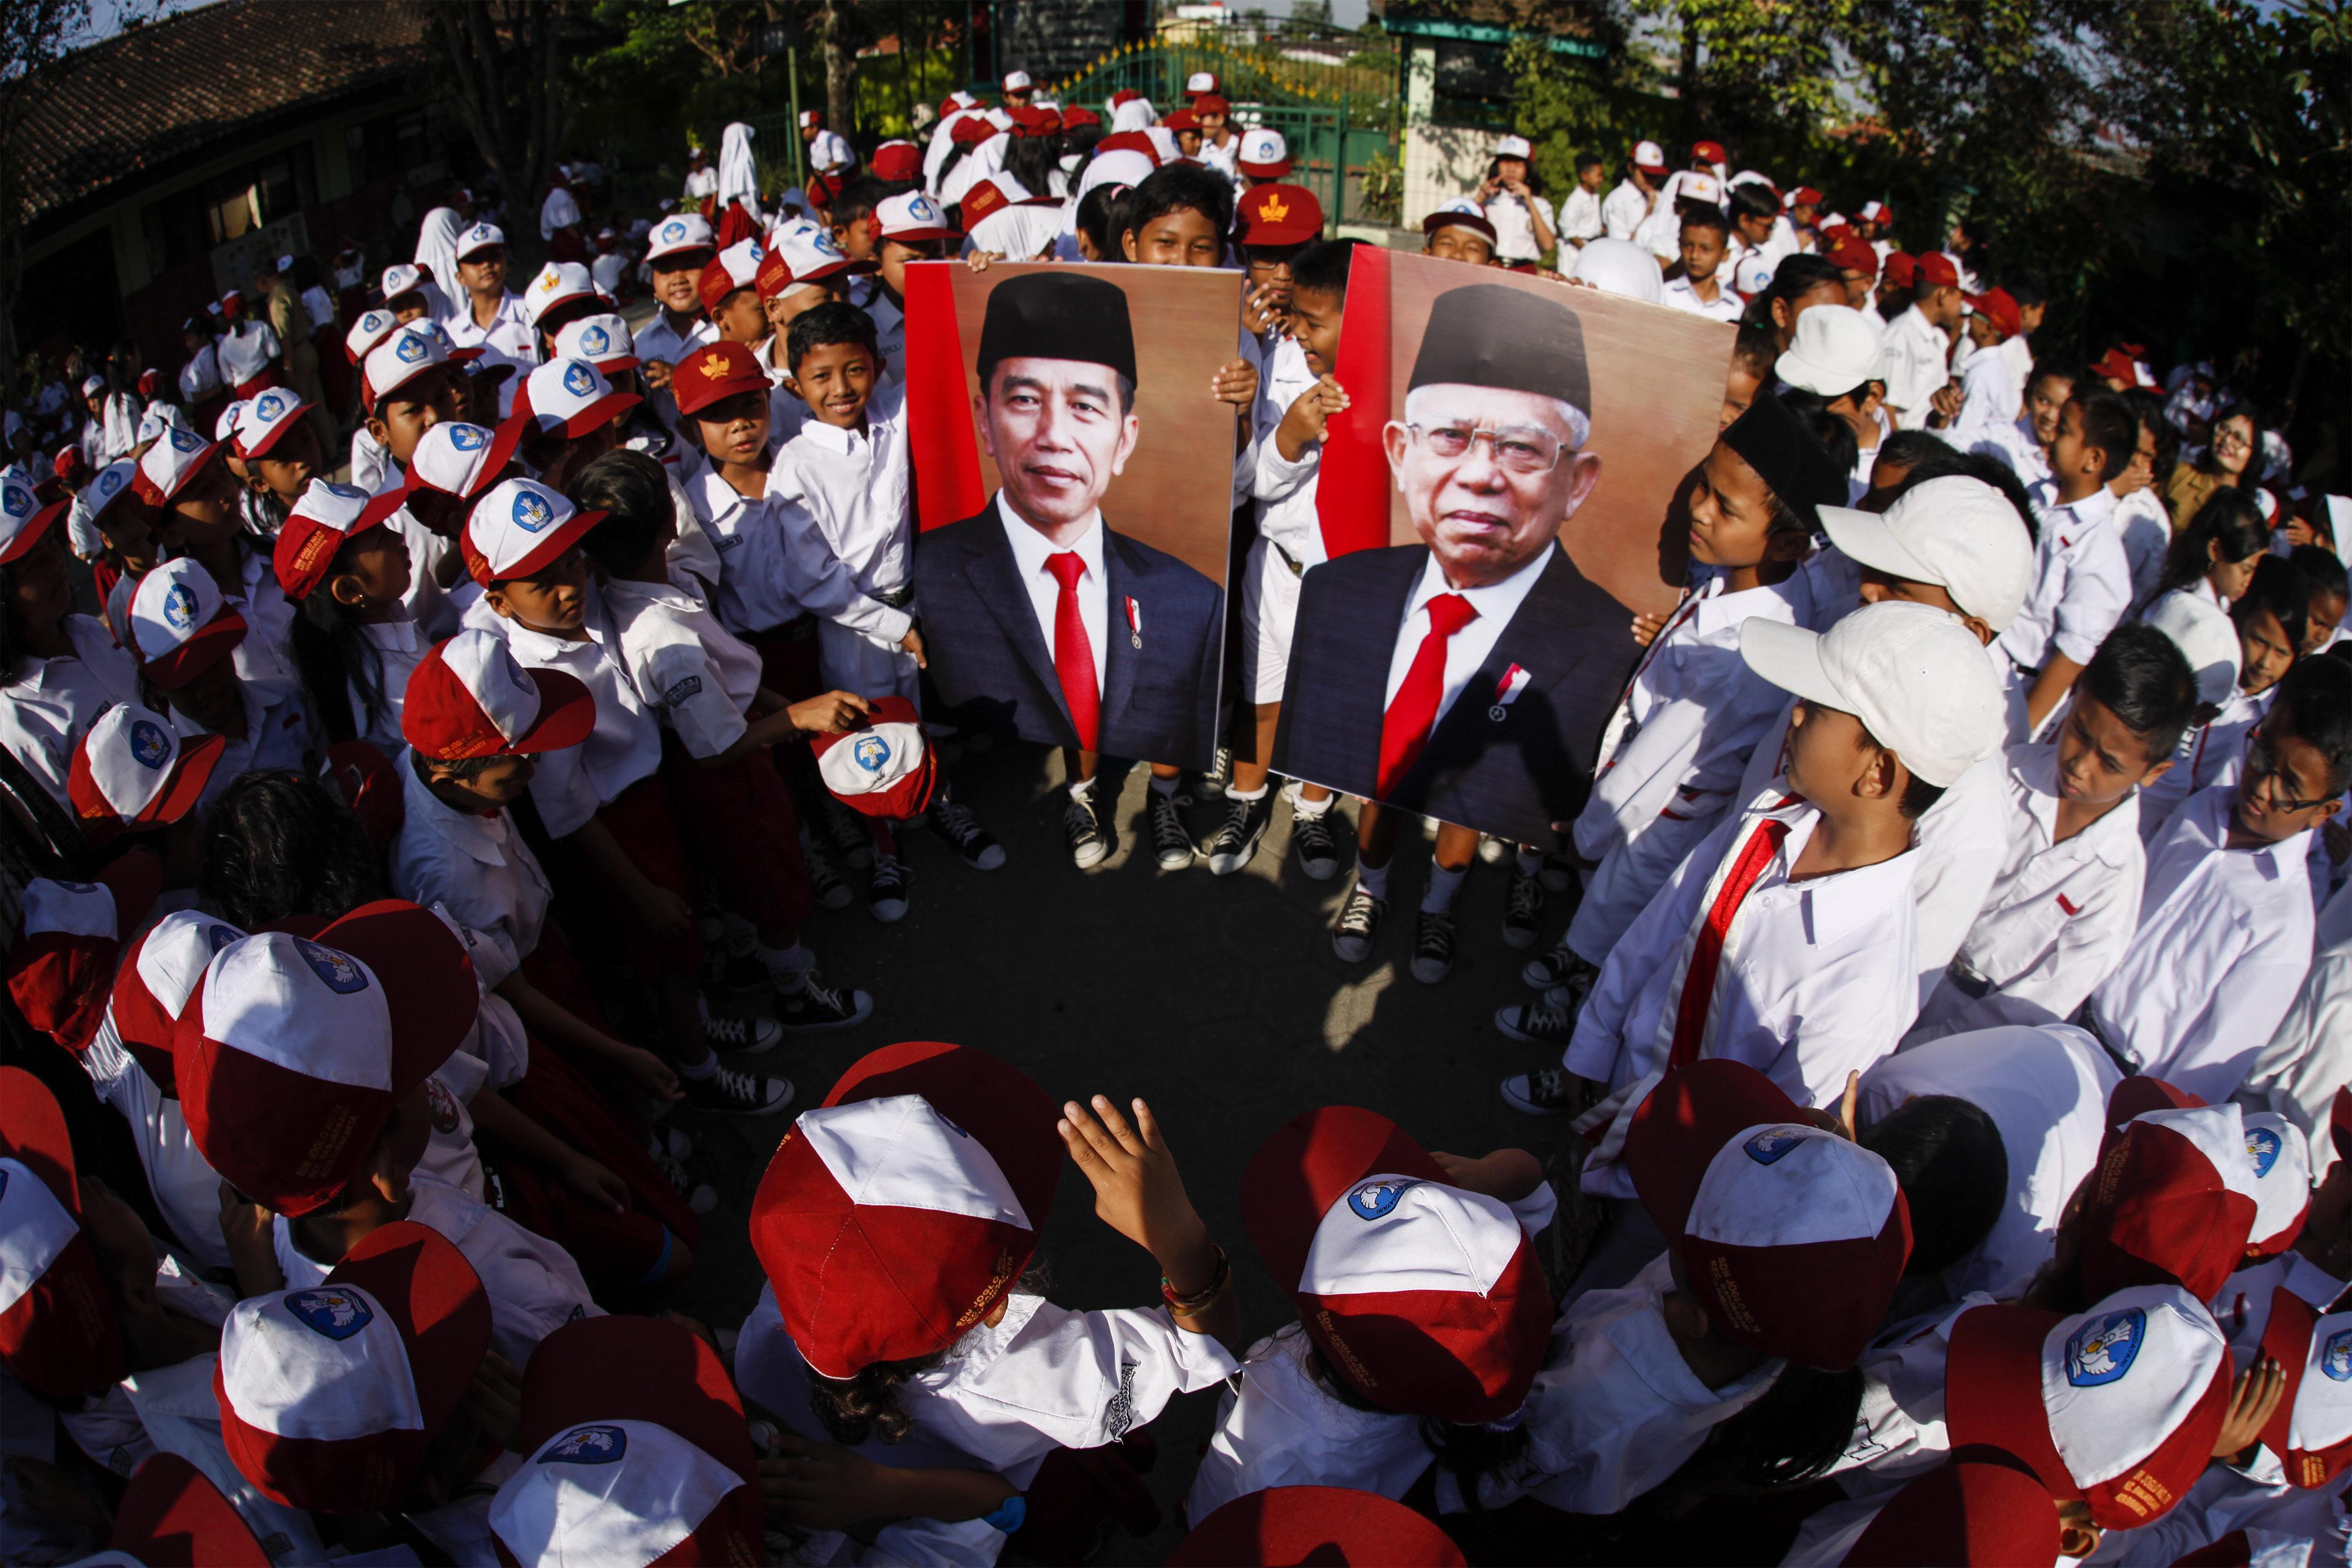 Begini Kinerja IHSG dan Reksadana dalam 1 Tahun Kepemimpinan Jokowi - Ma'ruf Amin